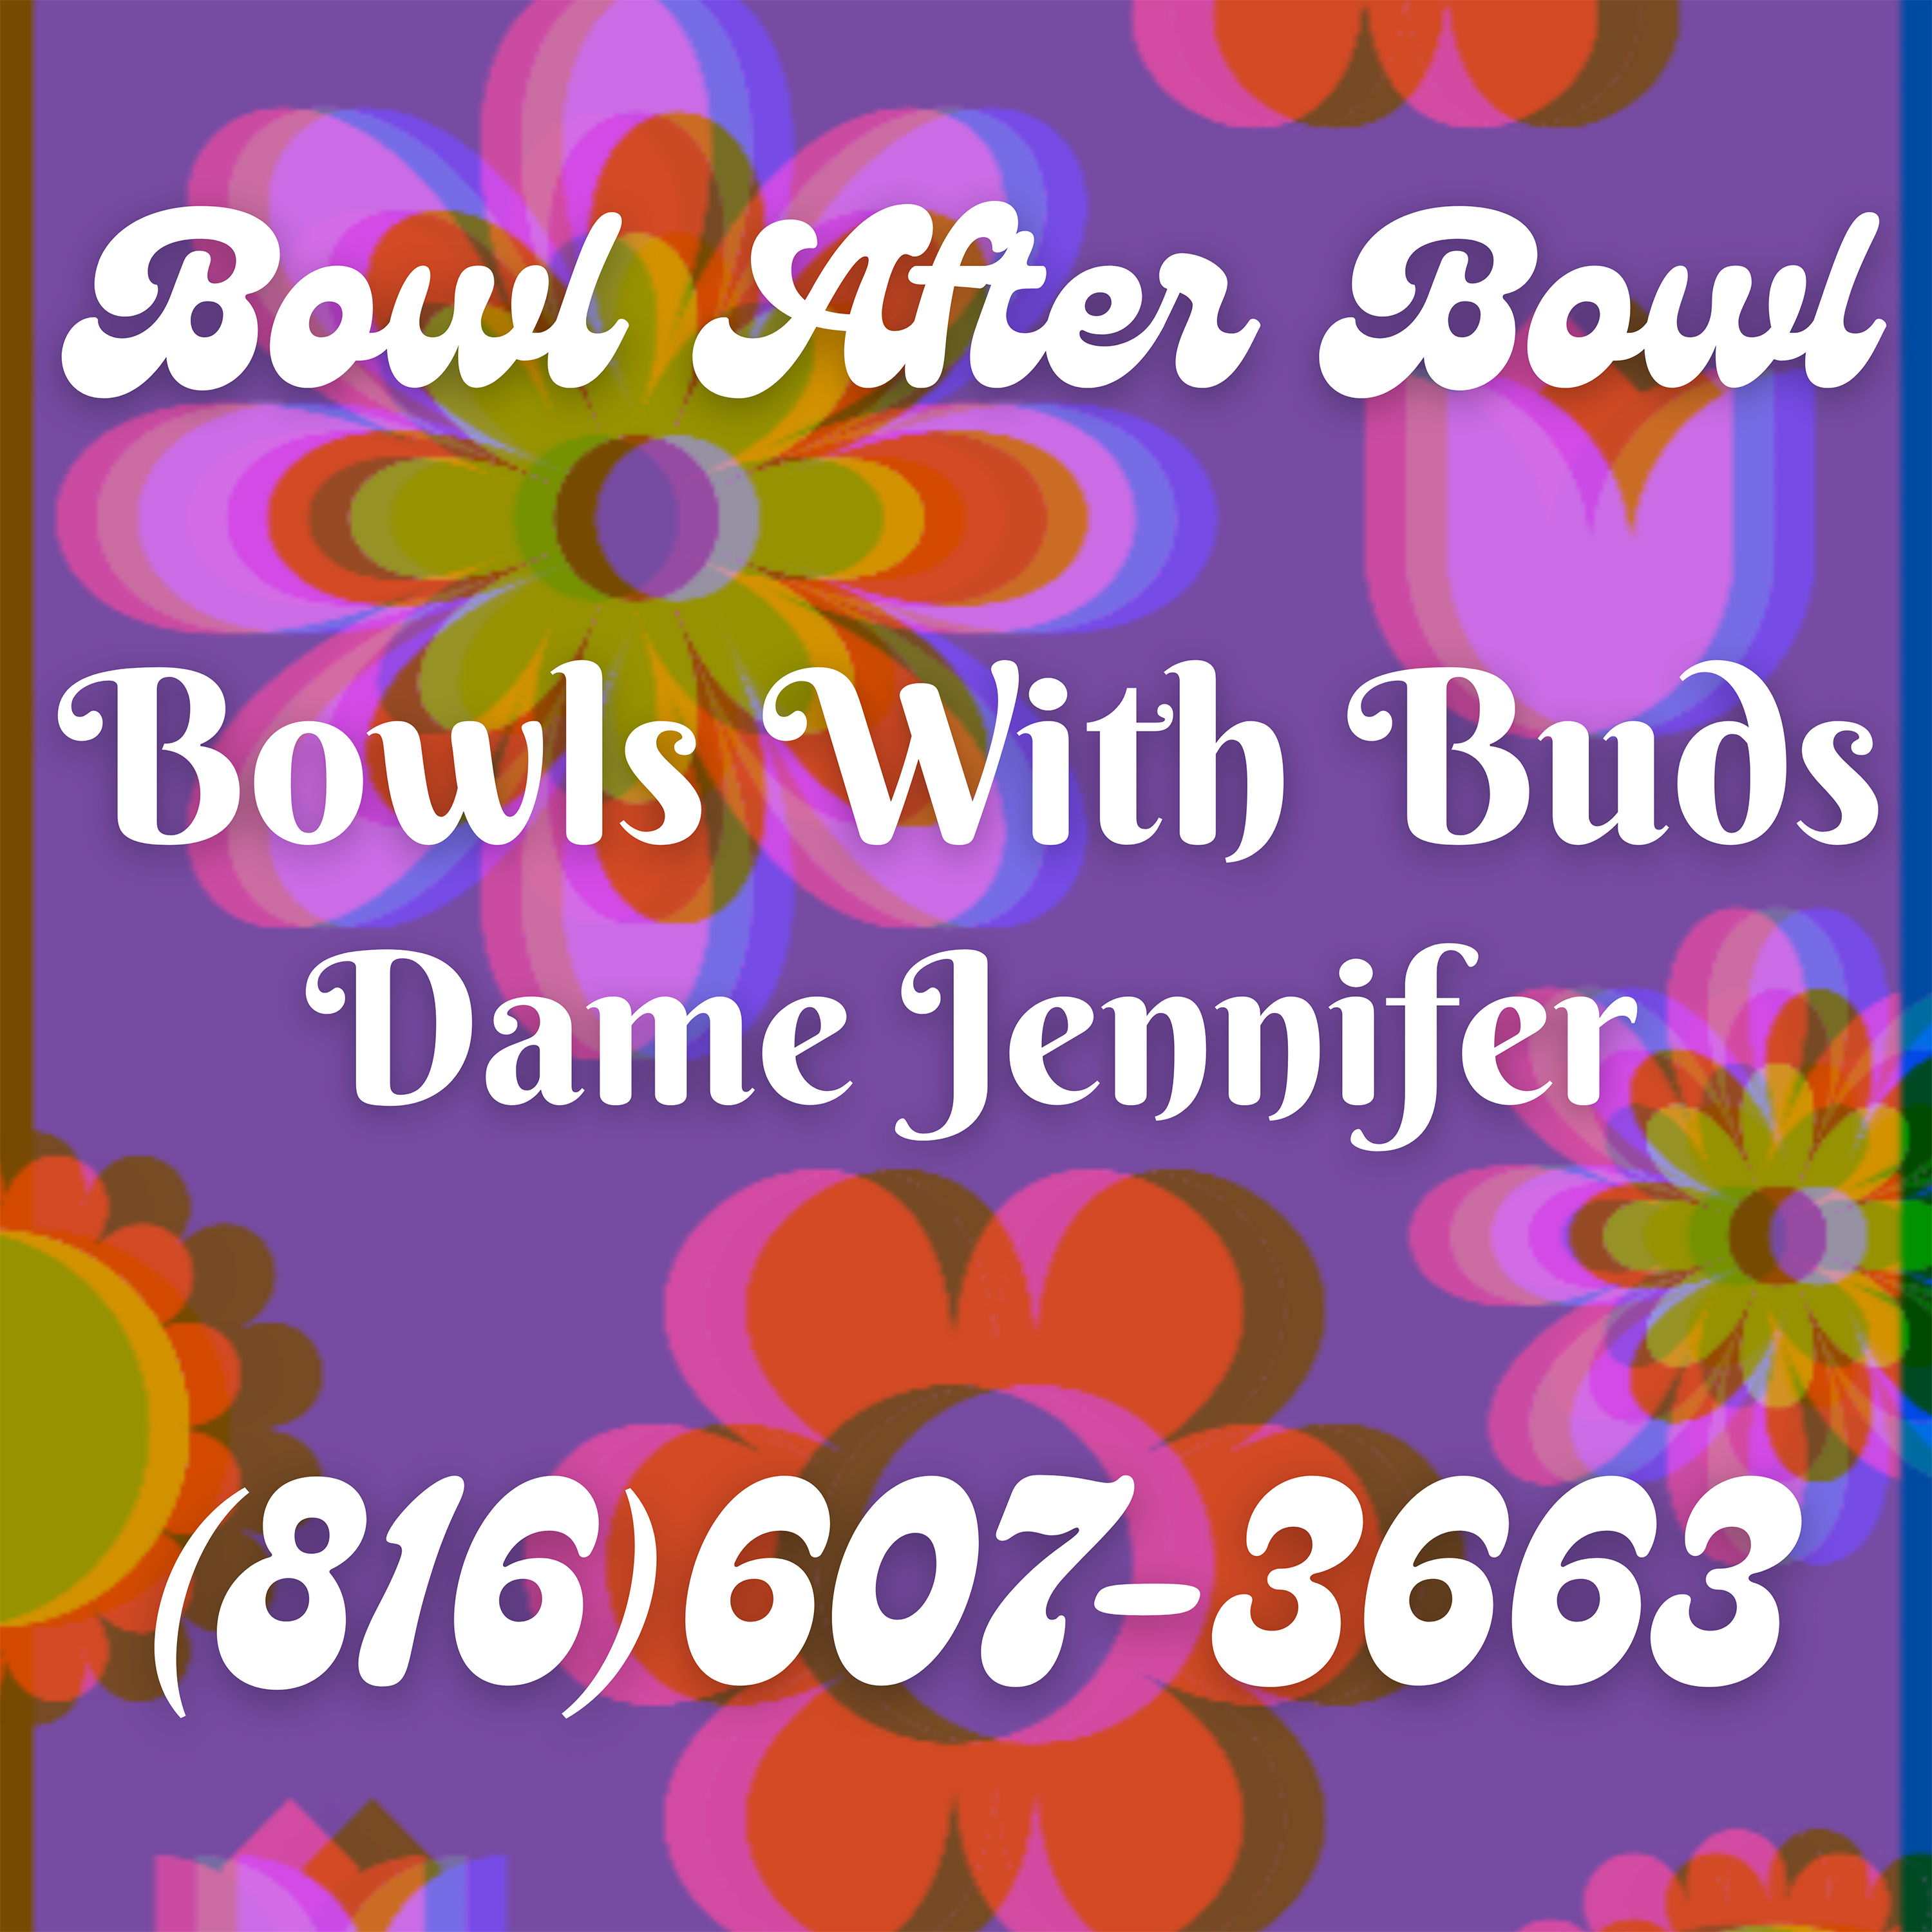 Episode 162 ★ Bowls With Buds ★ Dame Jennifer